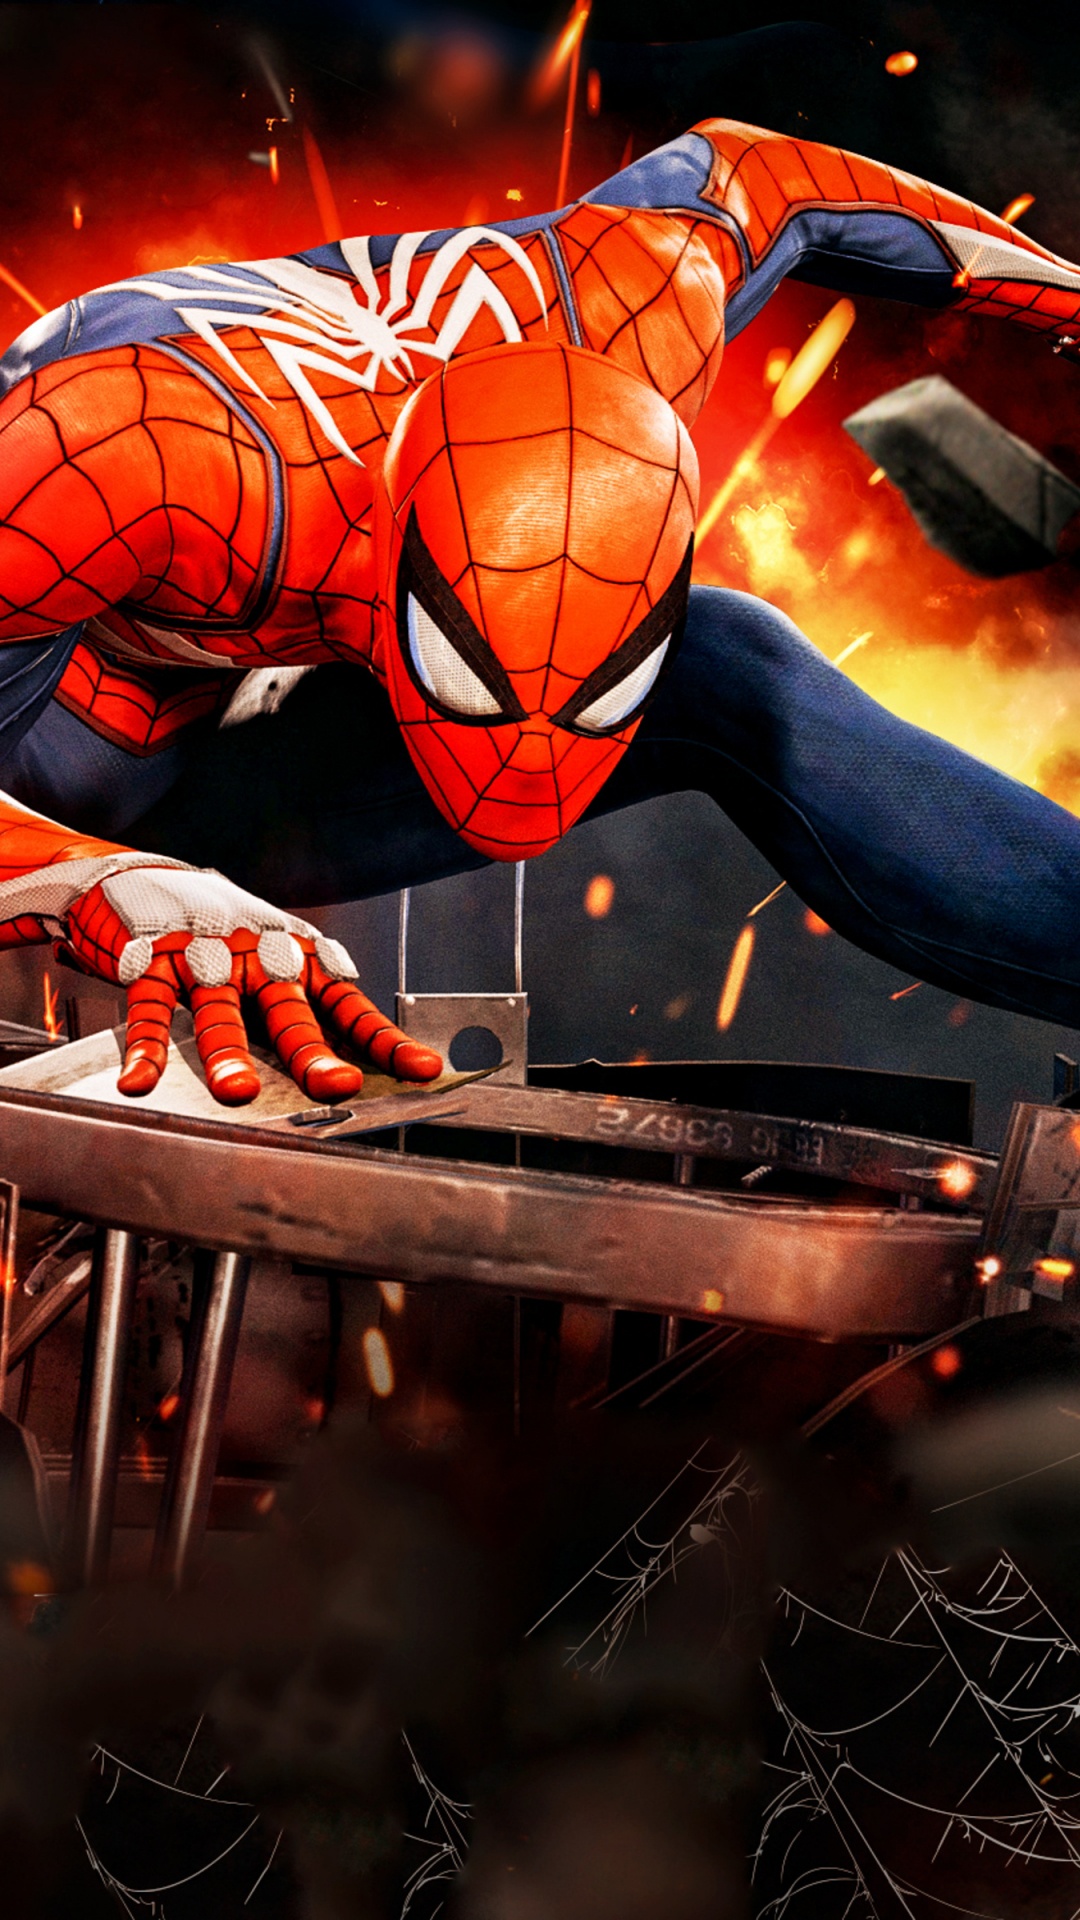 Spider-man, Superhero, pc Game, Movie, Games. Wallpaper in 1080x1920 Resolution